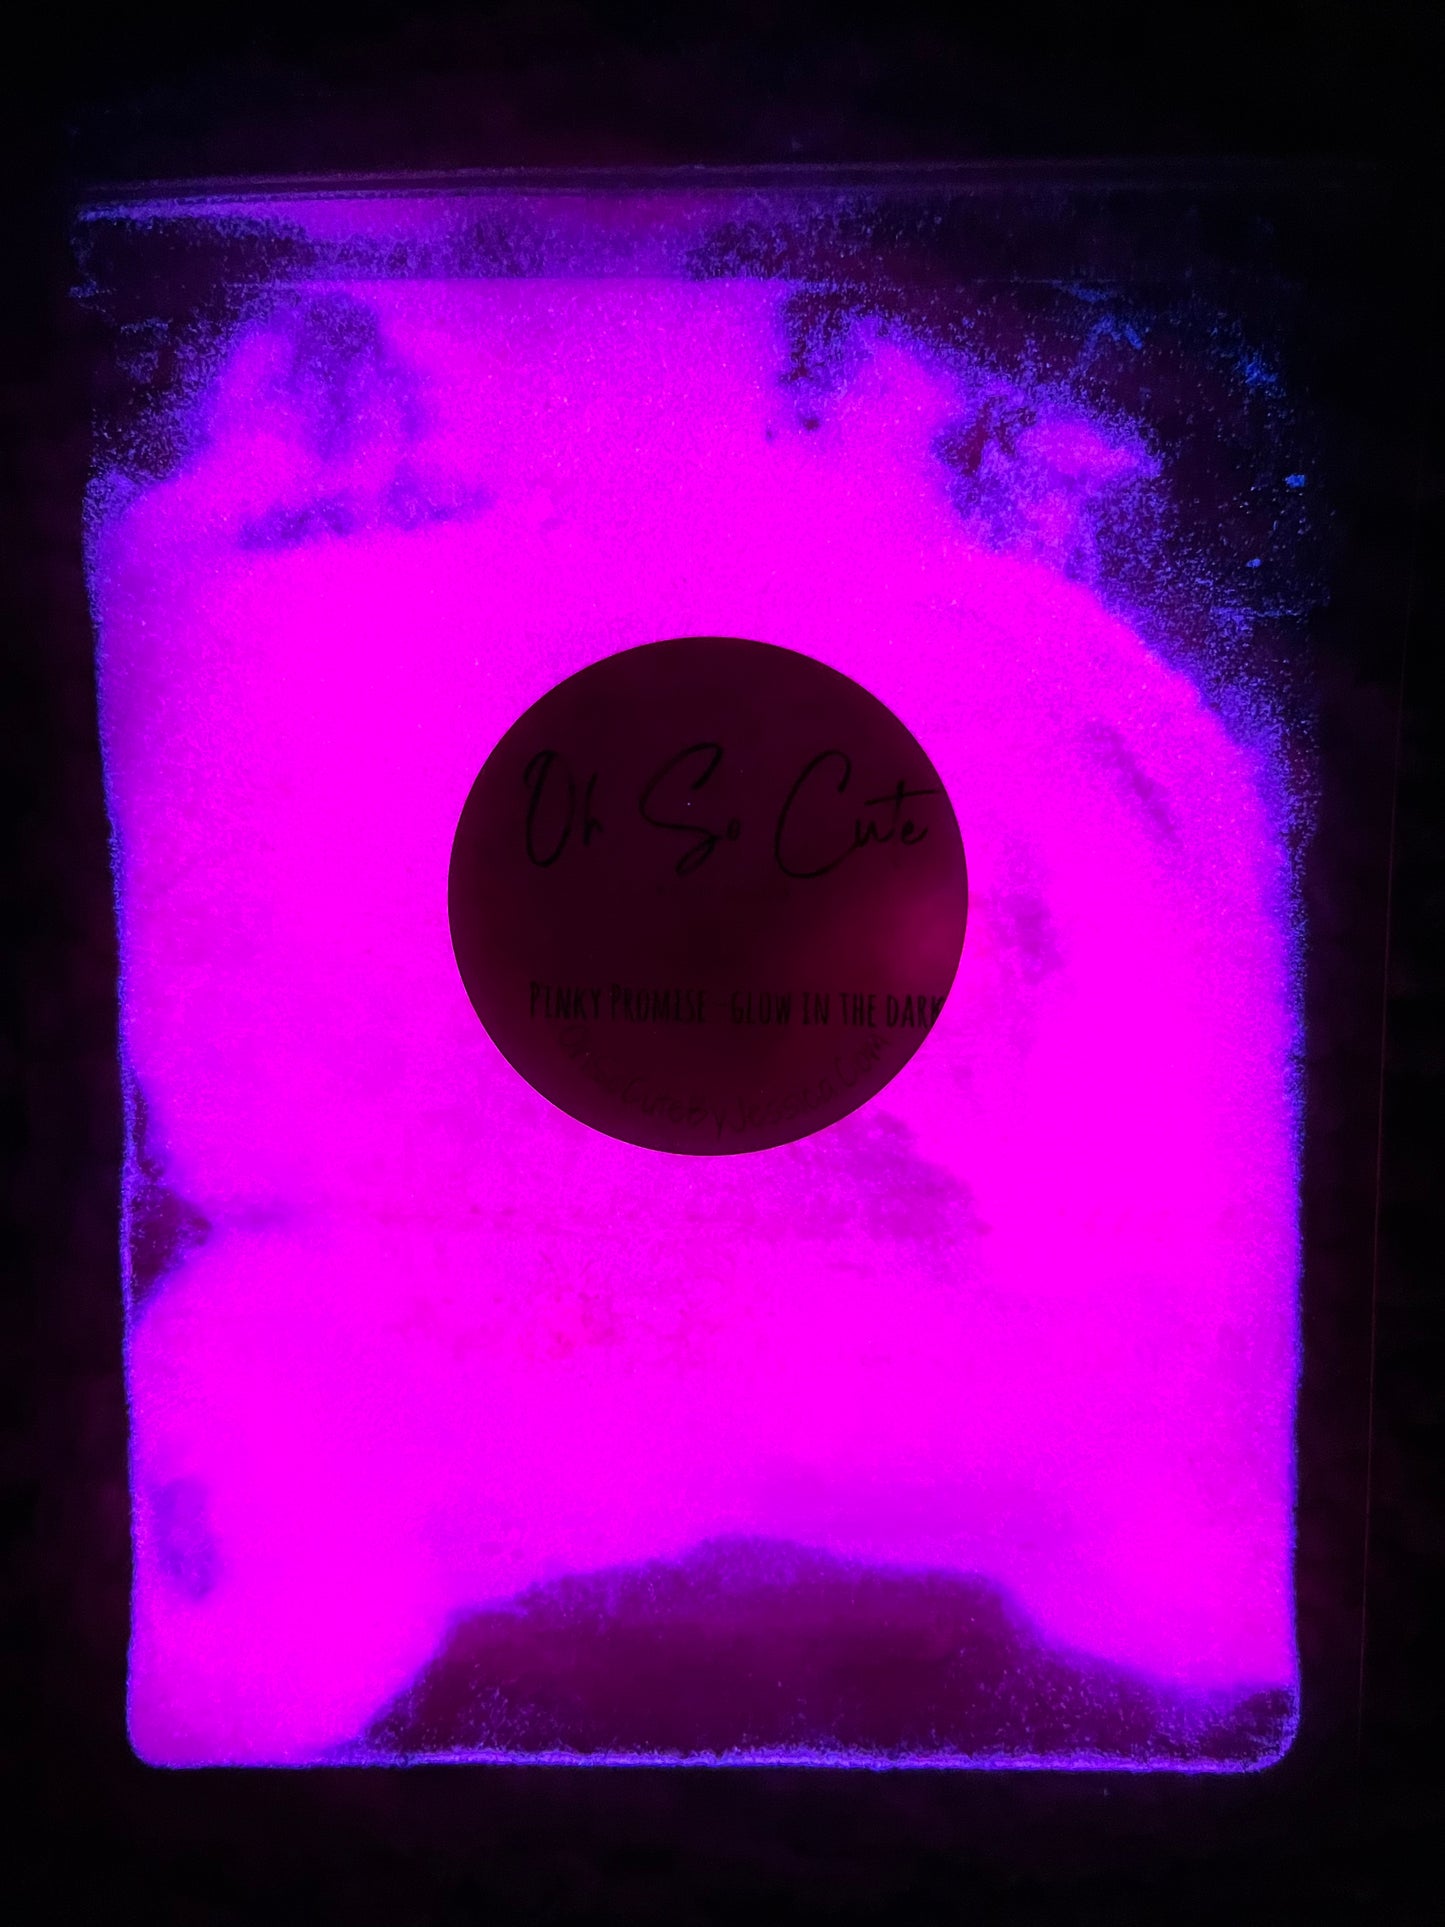 Pinky Promise- Glow Powder